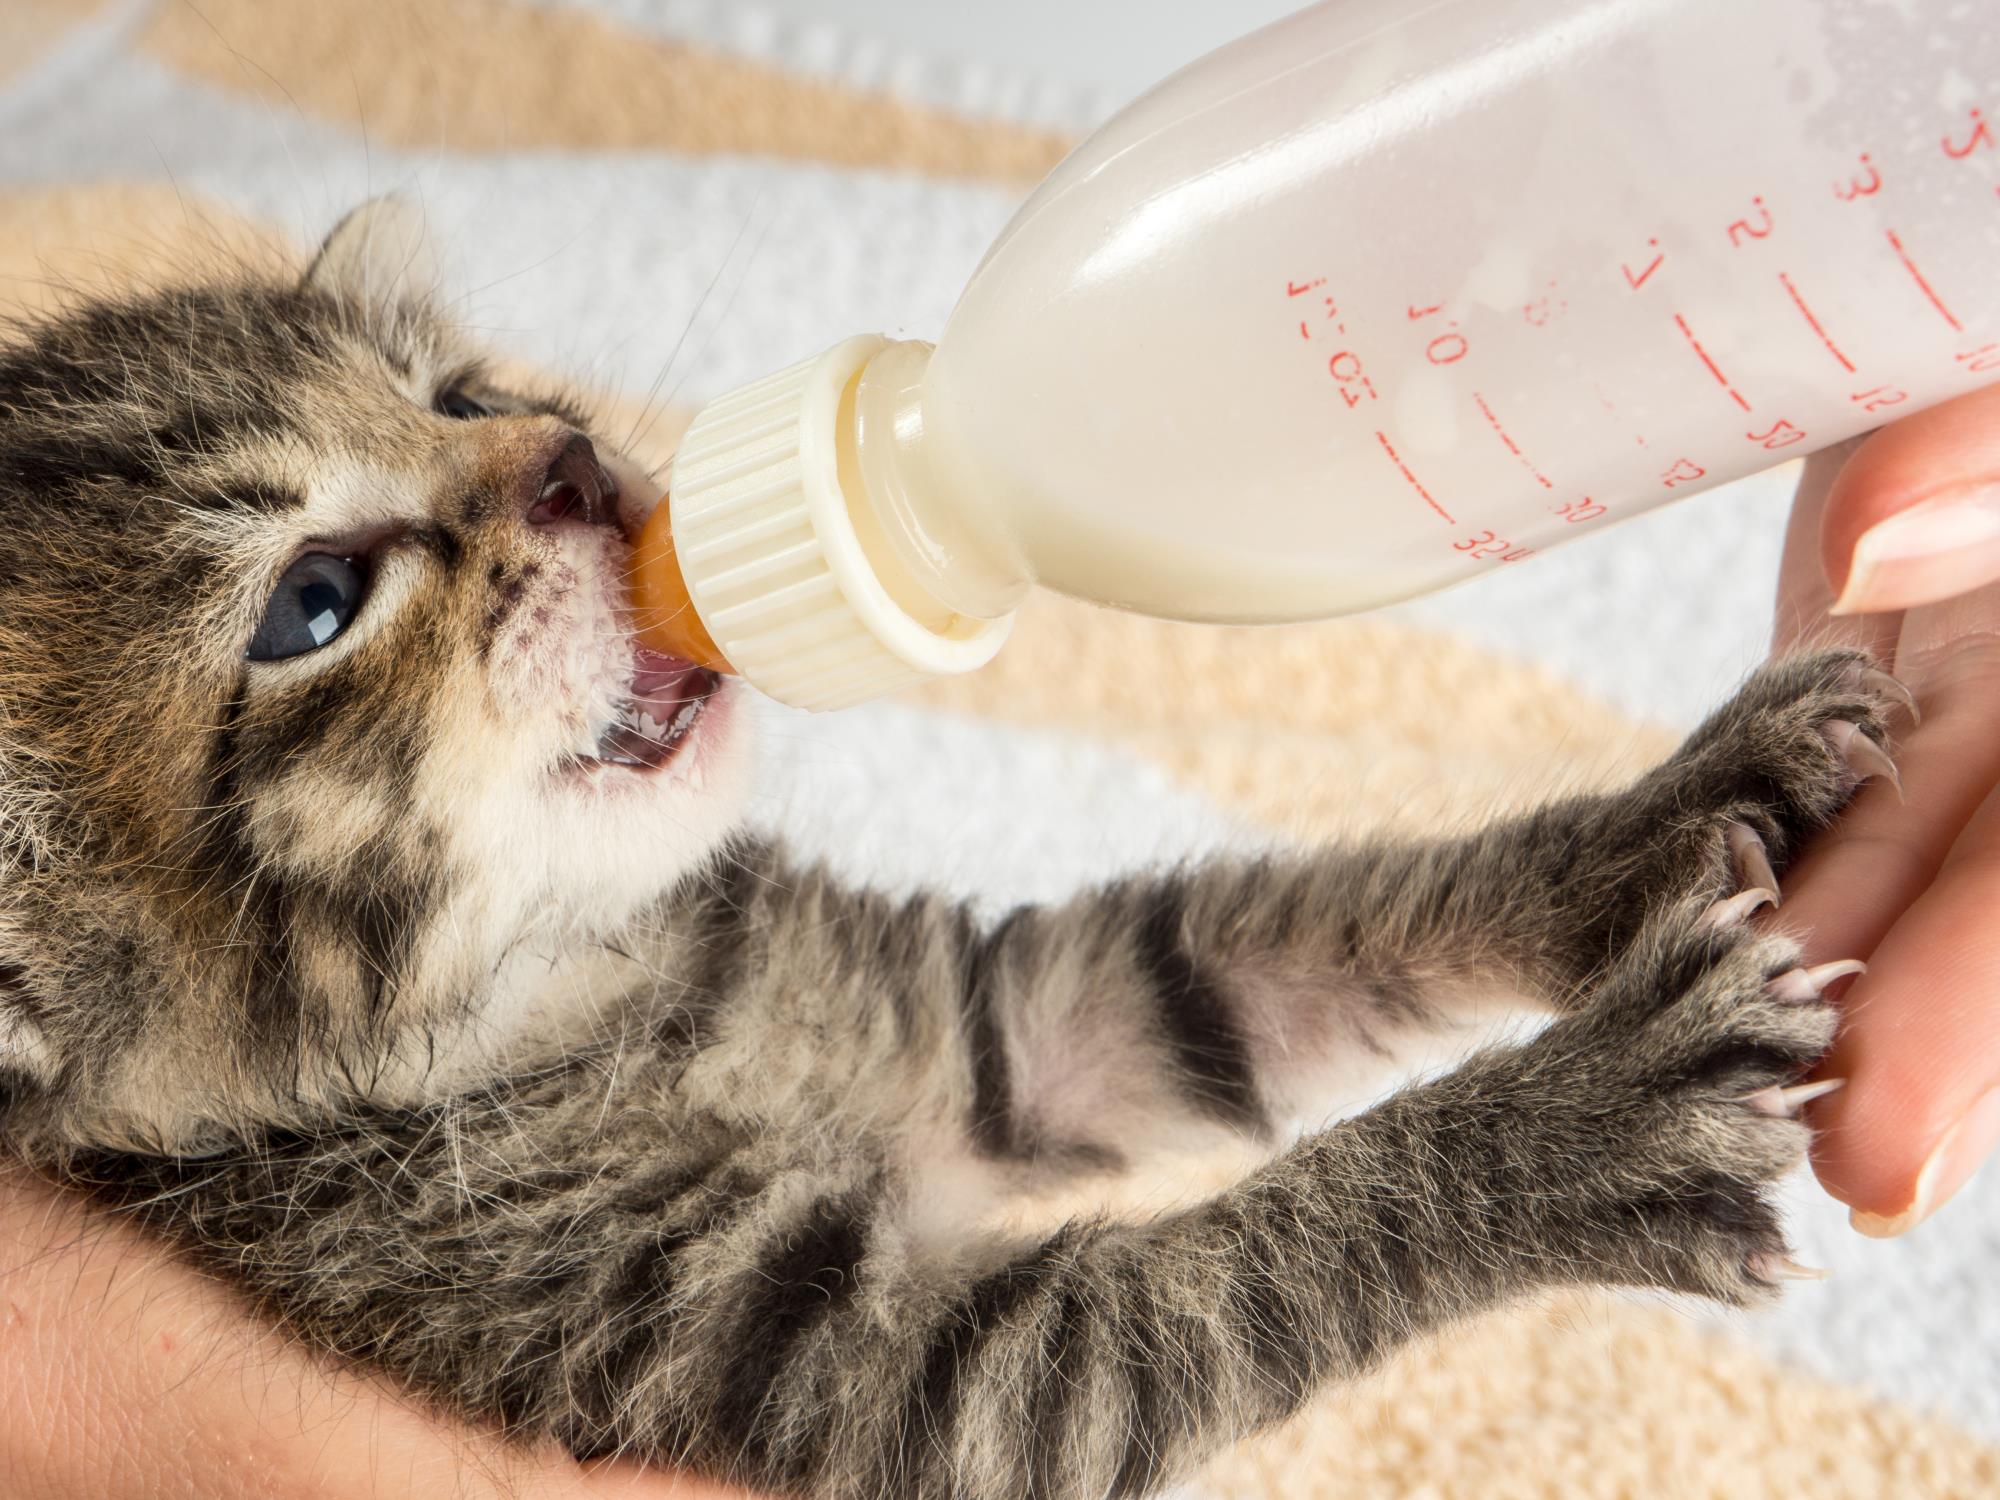 Person feeding a kitten a bottle